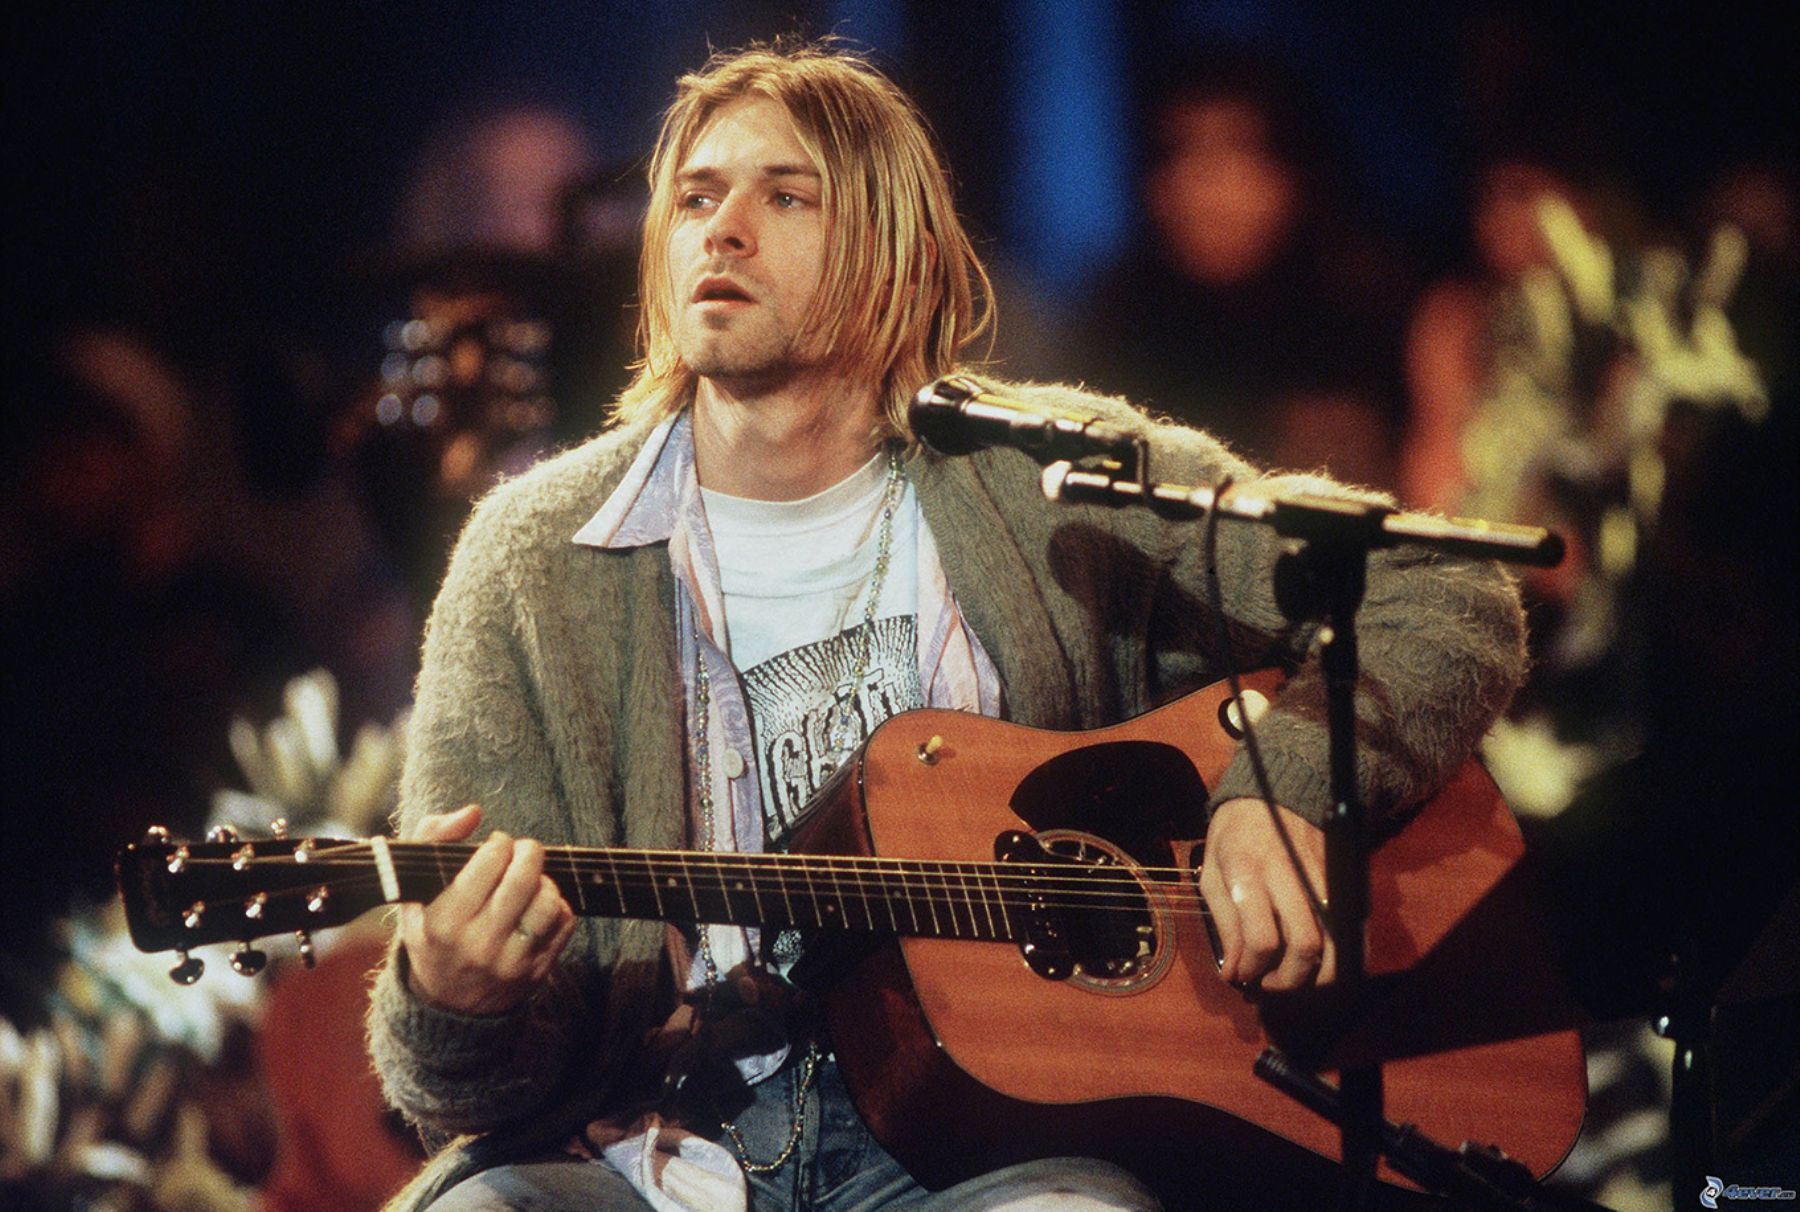 Subastan mechones del pelo de Kurt Cobain por 14.145 dólares